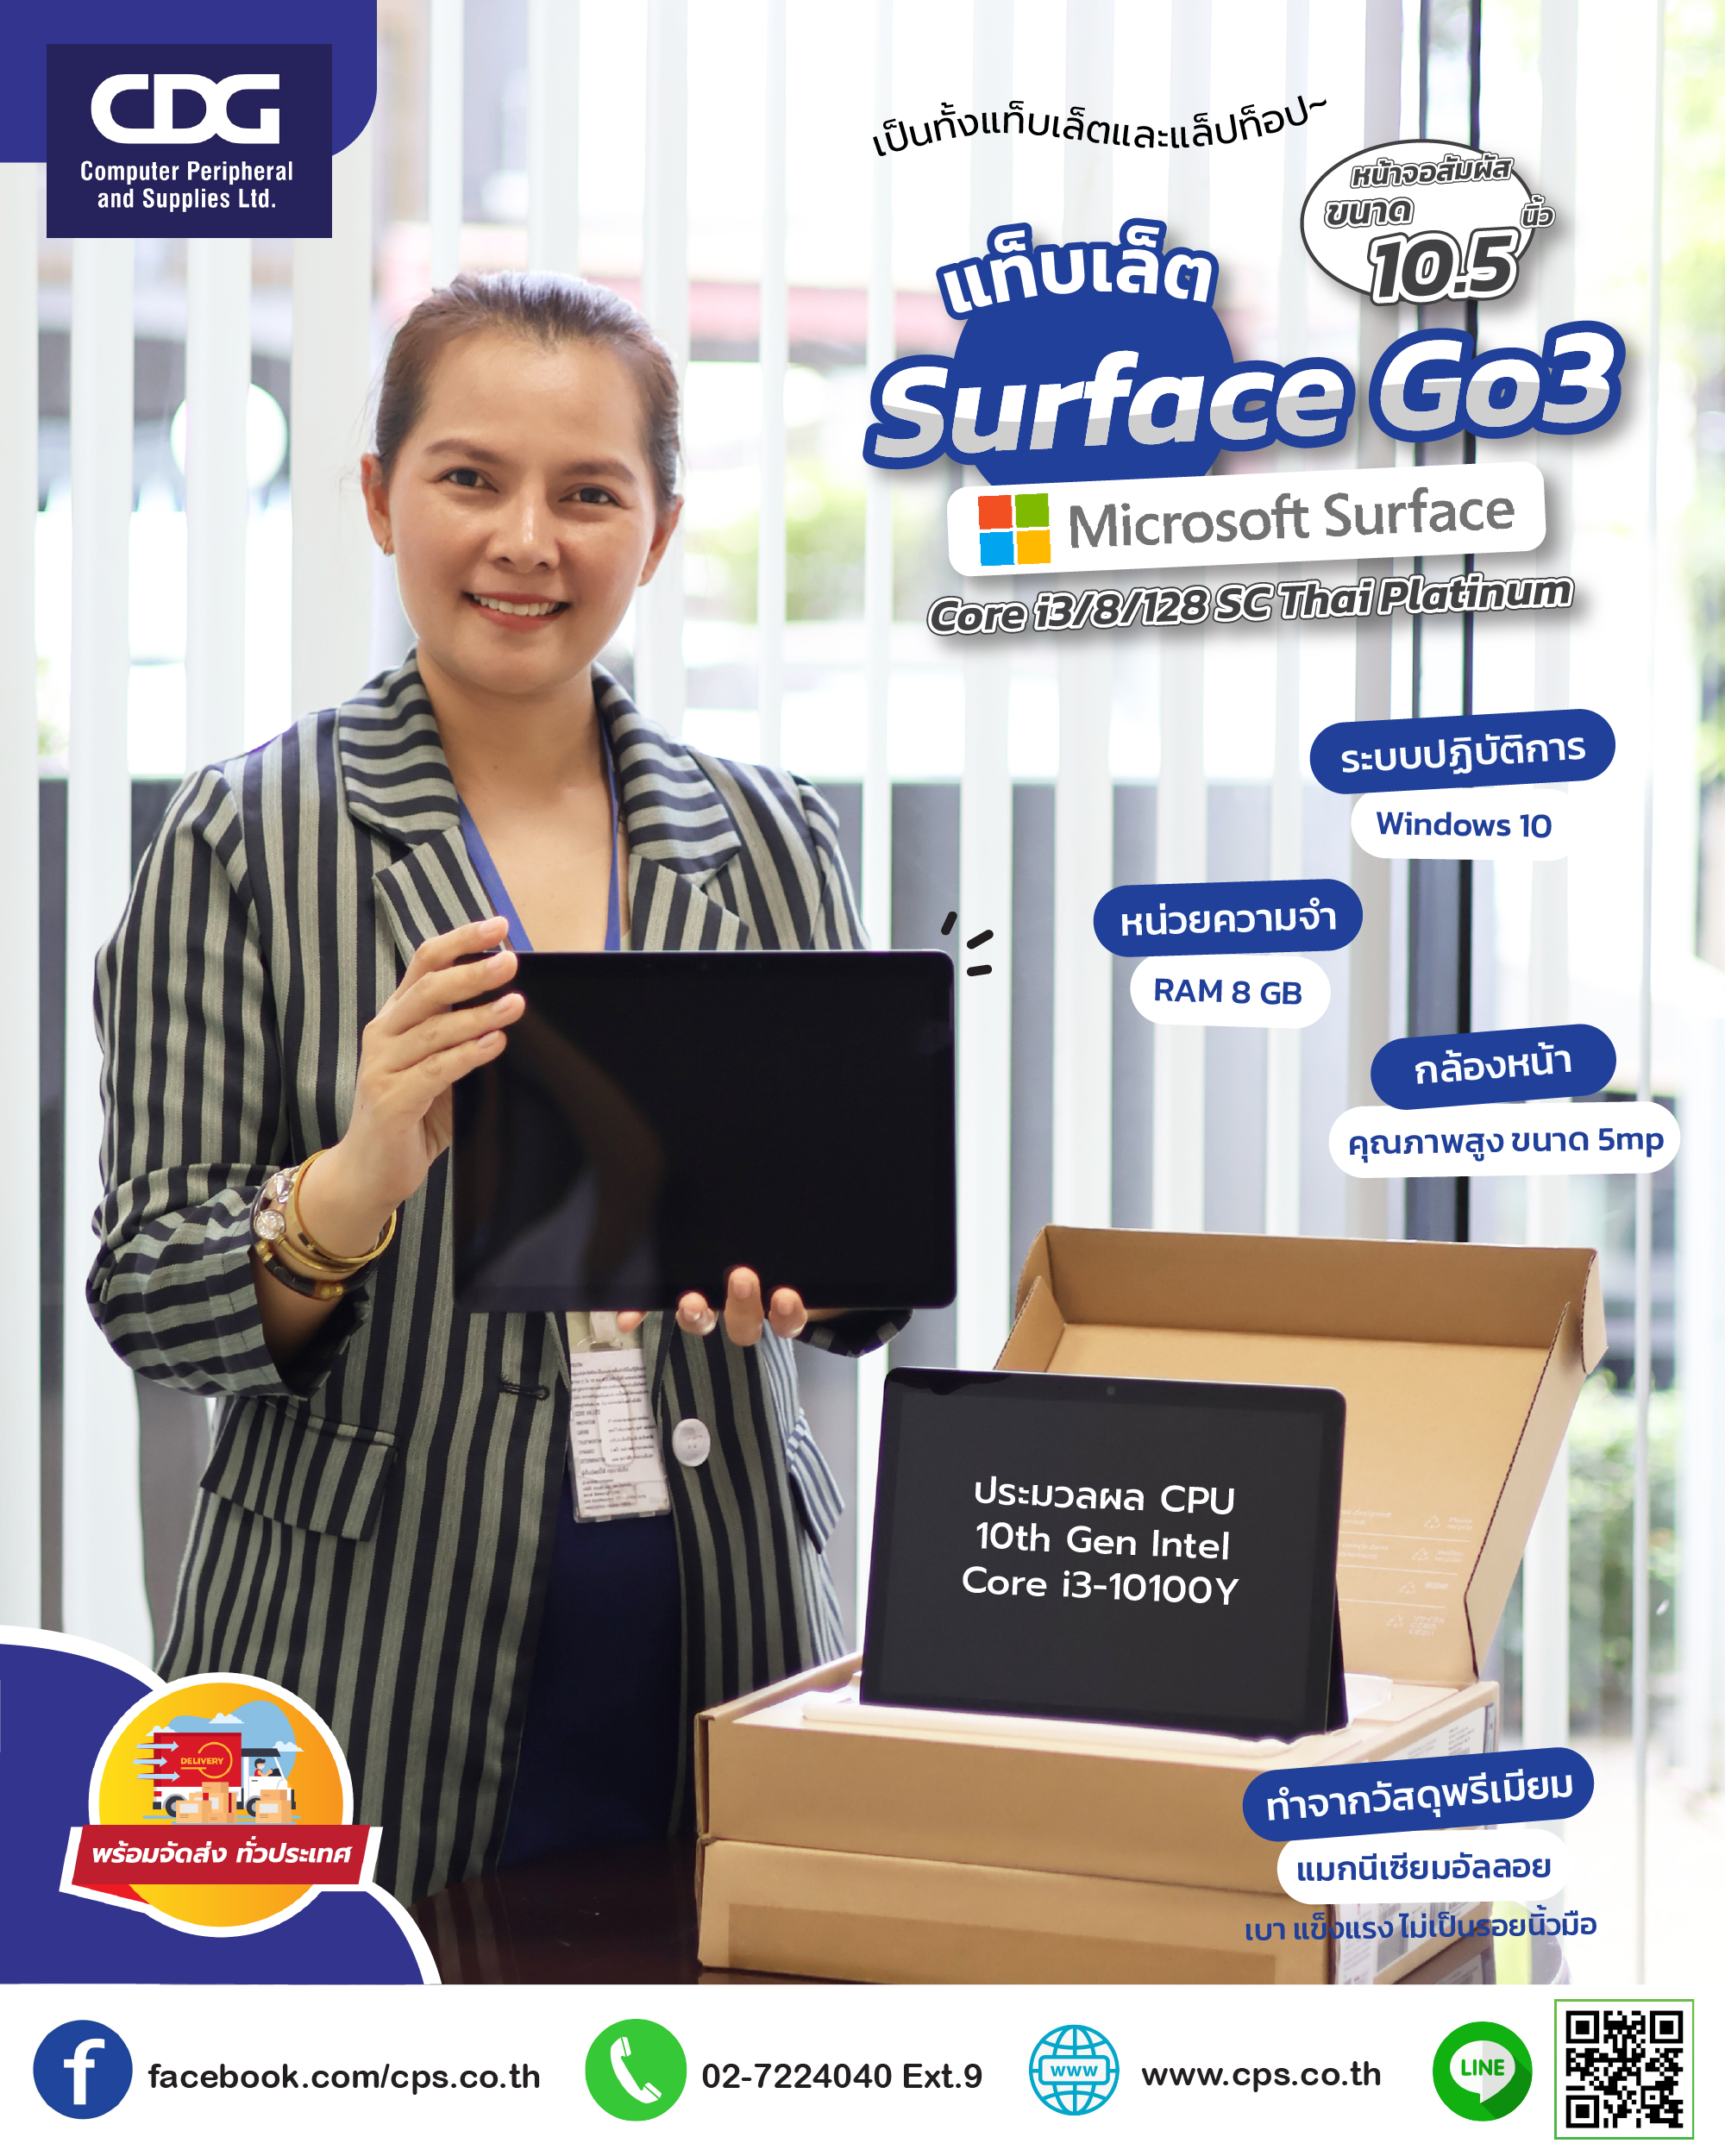 แท็บเล็ต Microsoft Surface Go3 Core i3 /8 / 128 / Windows 10